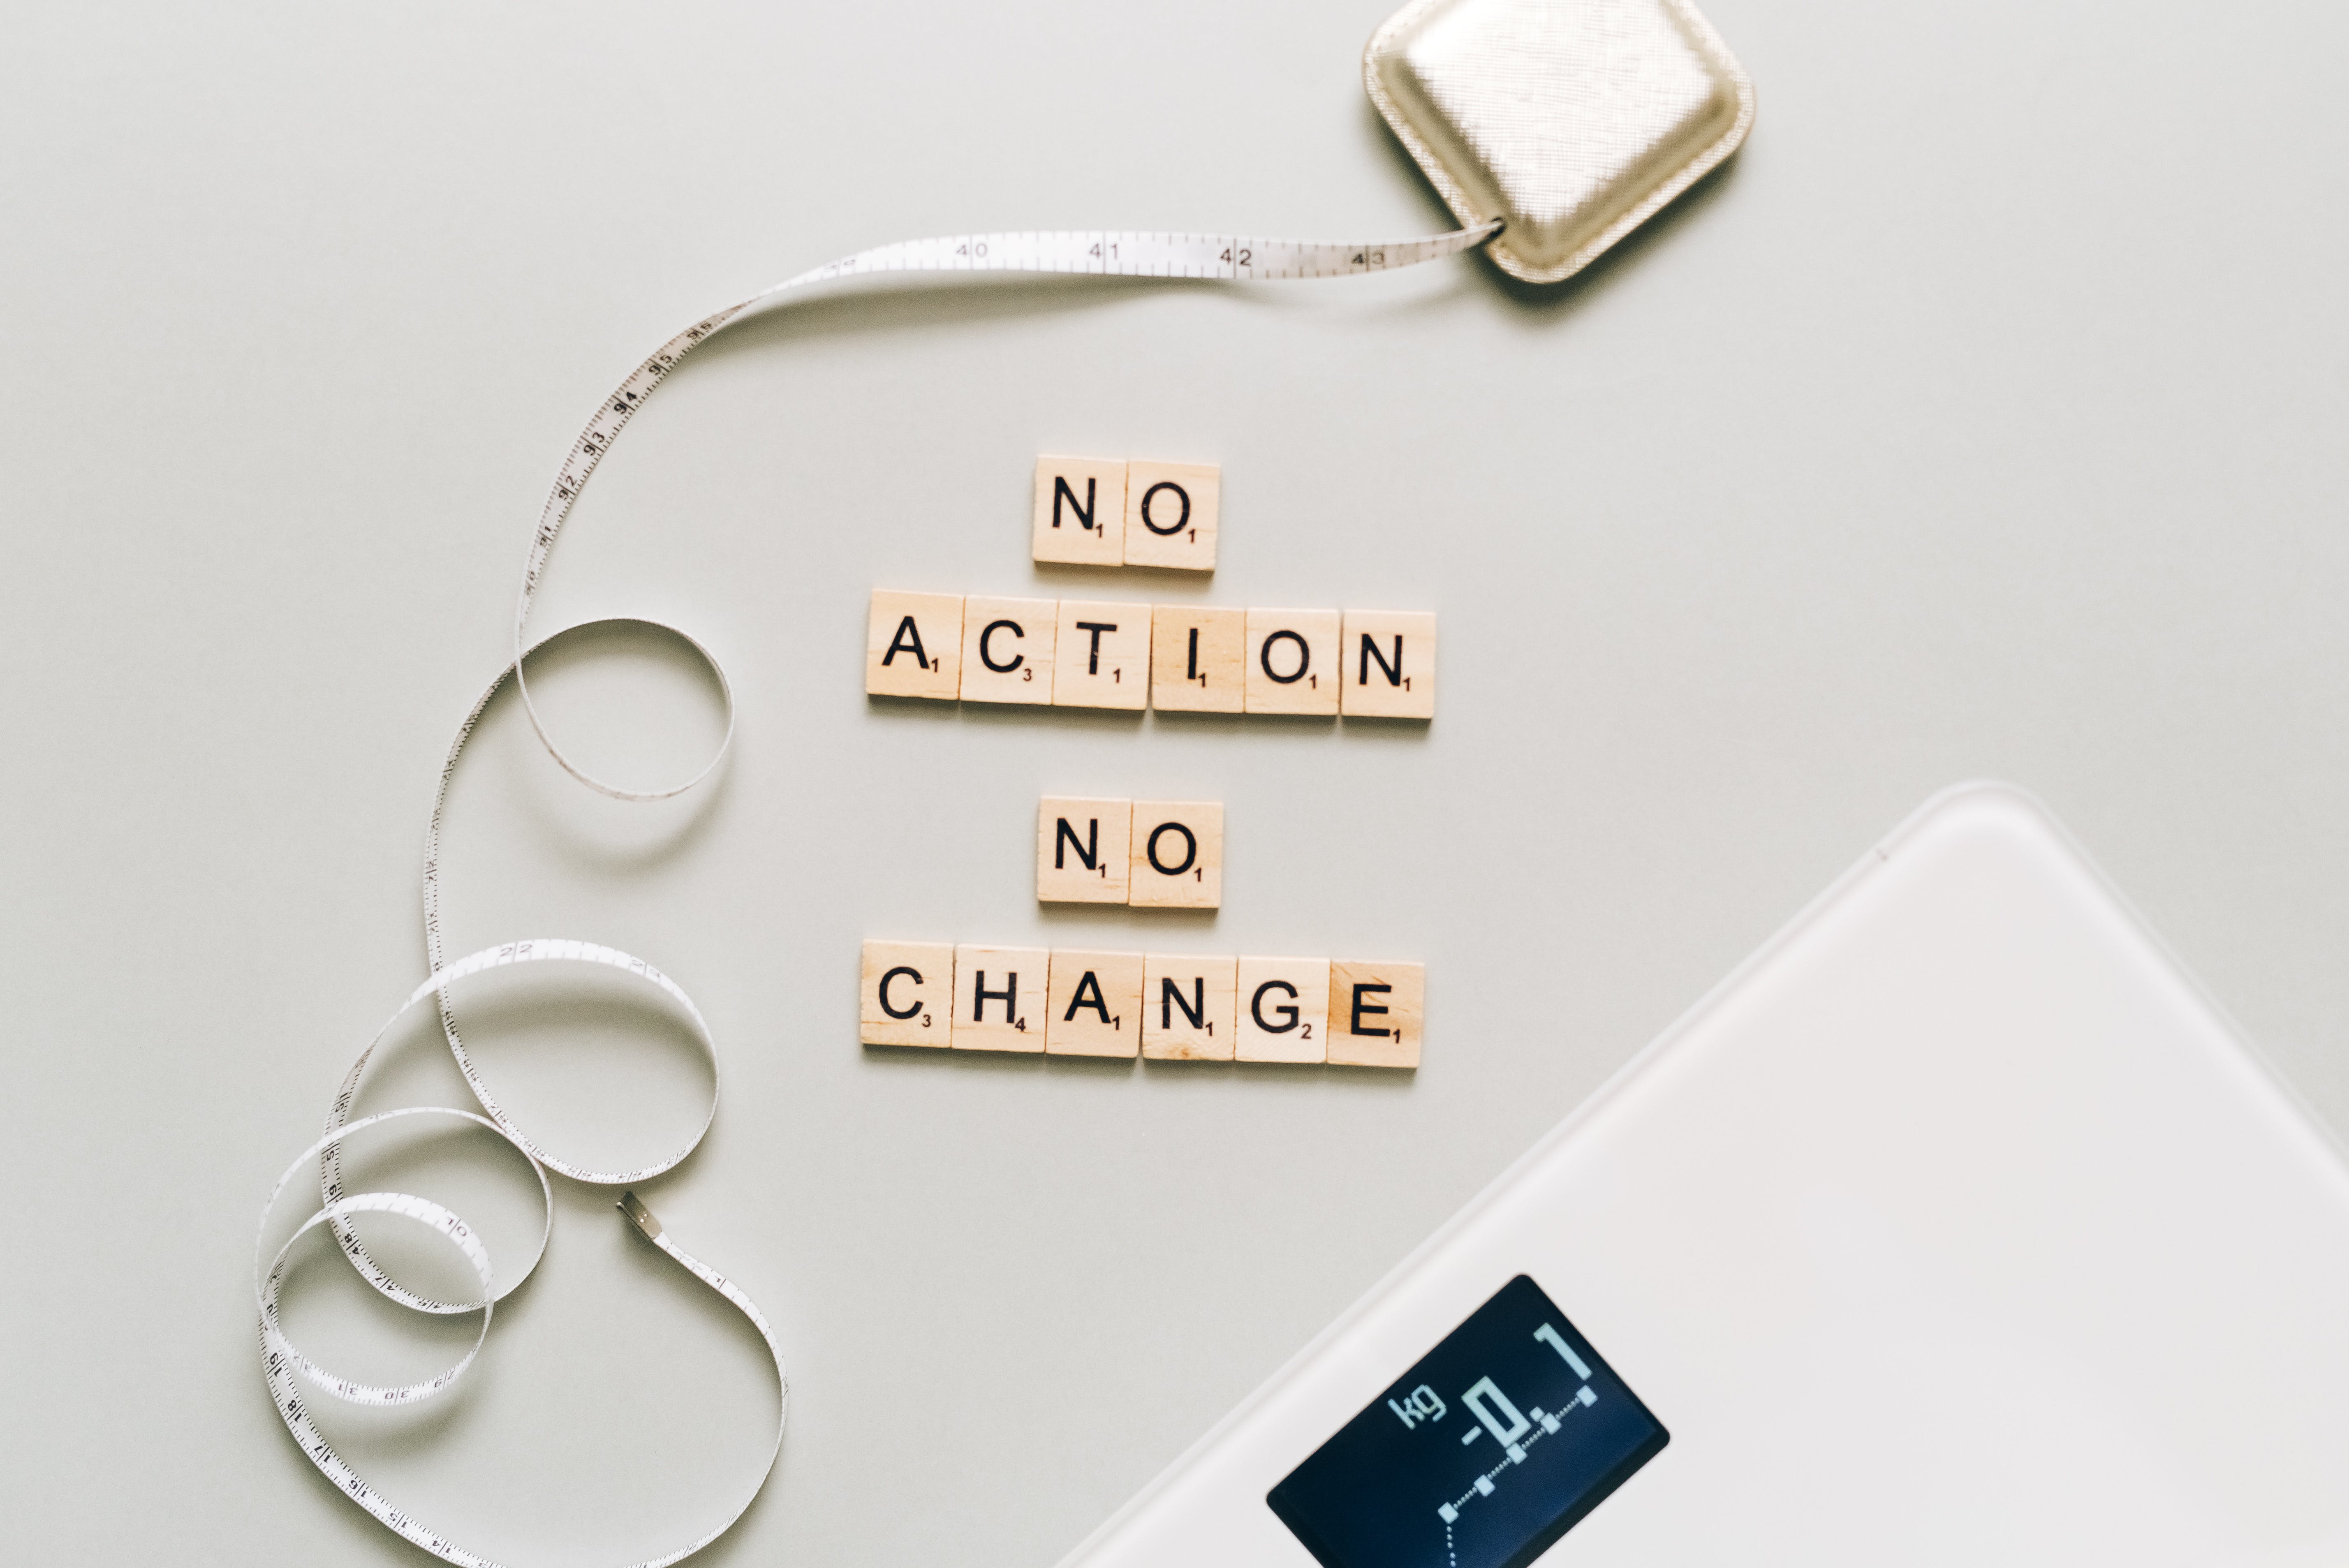 No action no change- weight loss symbols